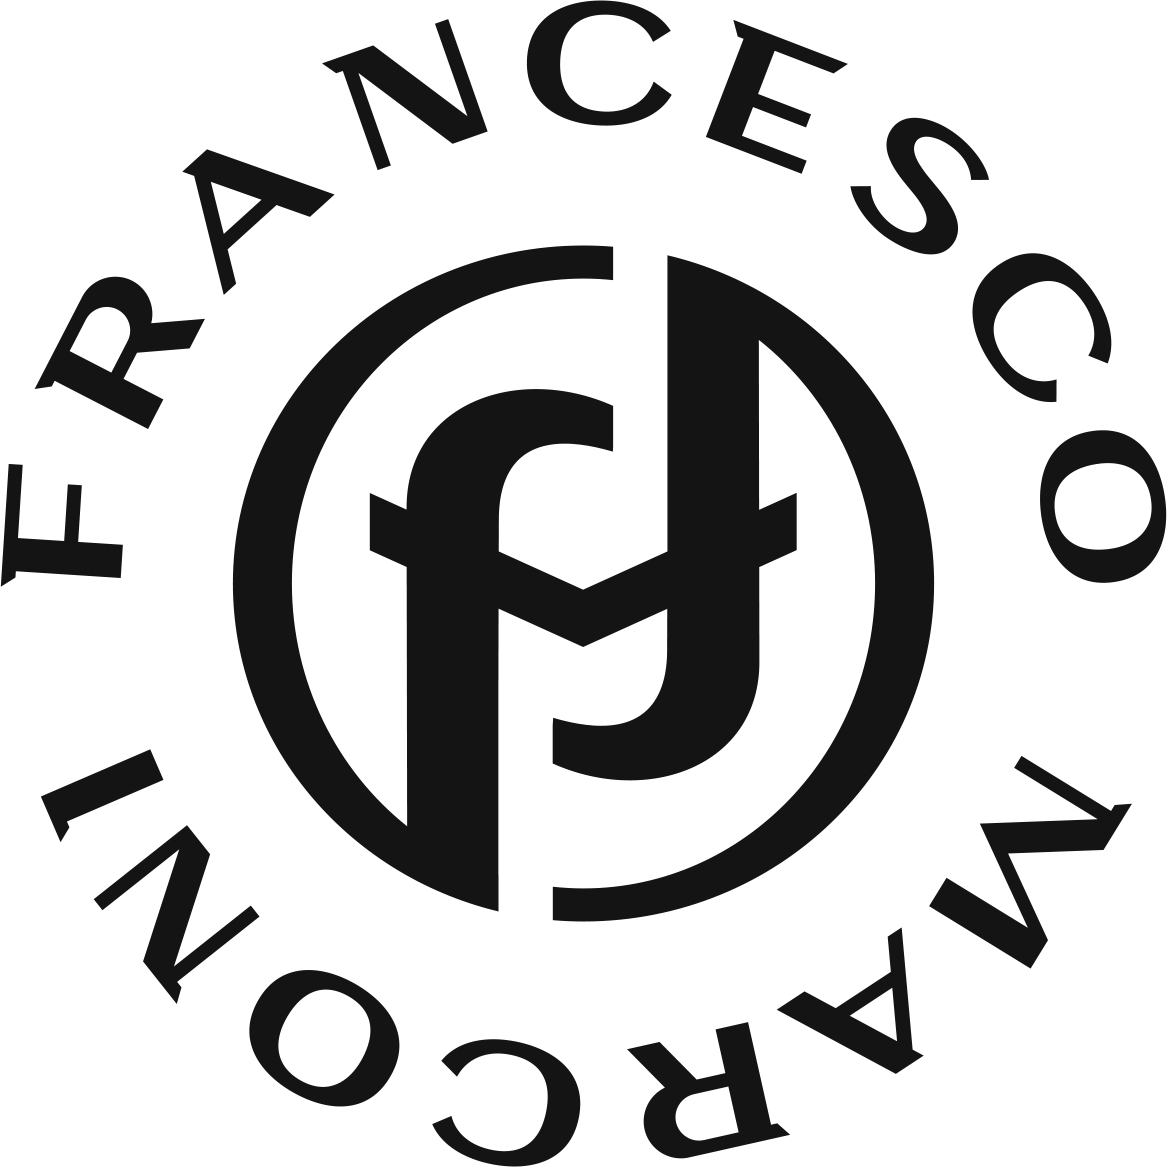 FRANCESCO MARCONI